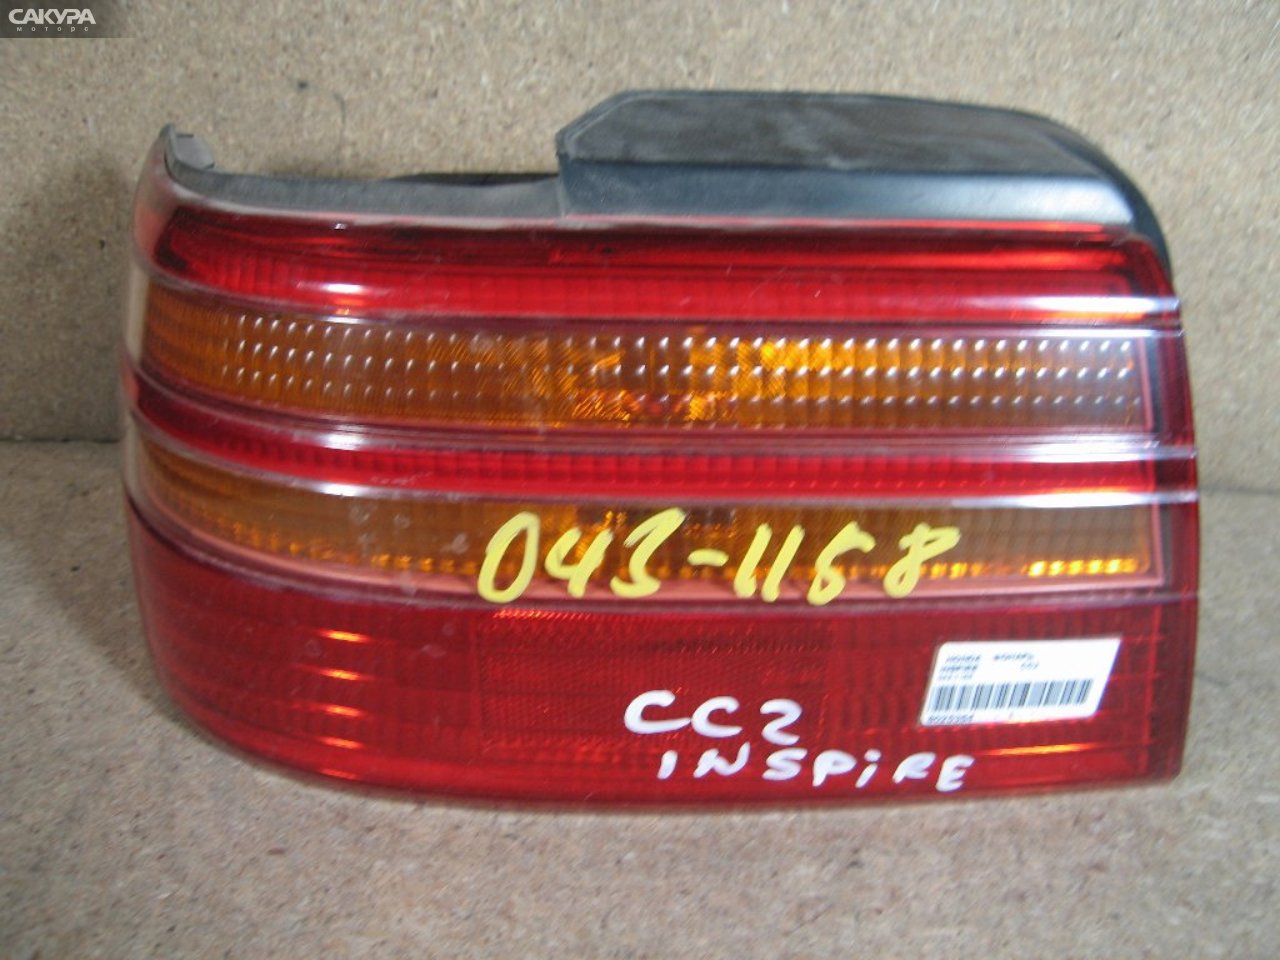 Фонарь стоп-сигнала левый Honda Inspire CC2 043-1158: купить в Сакура Абакан.